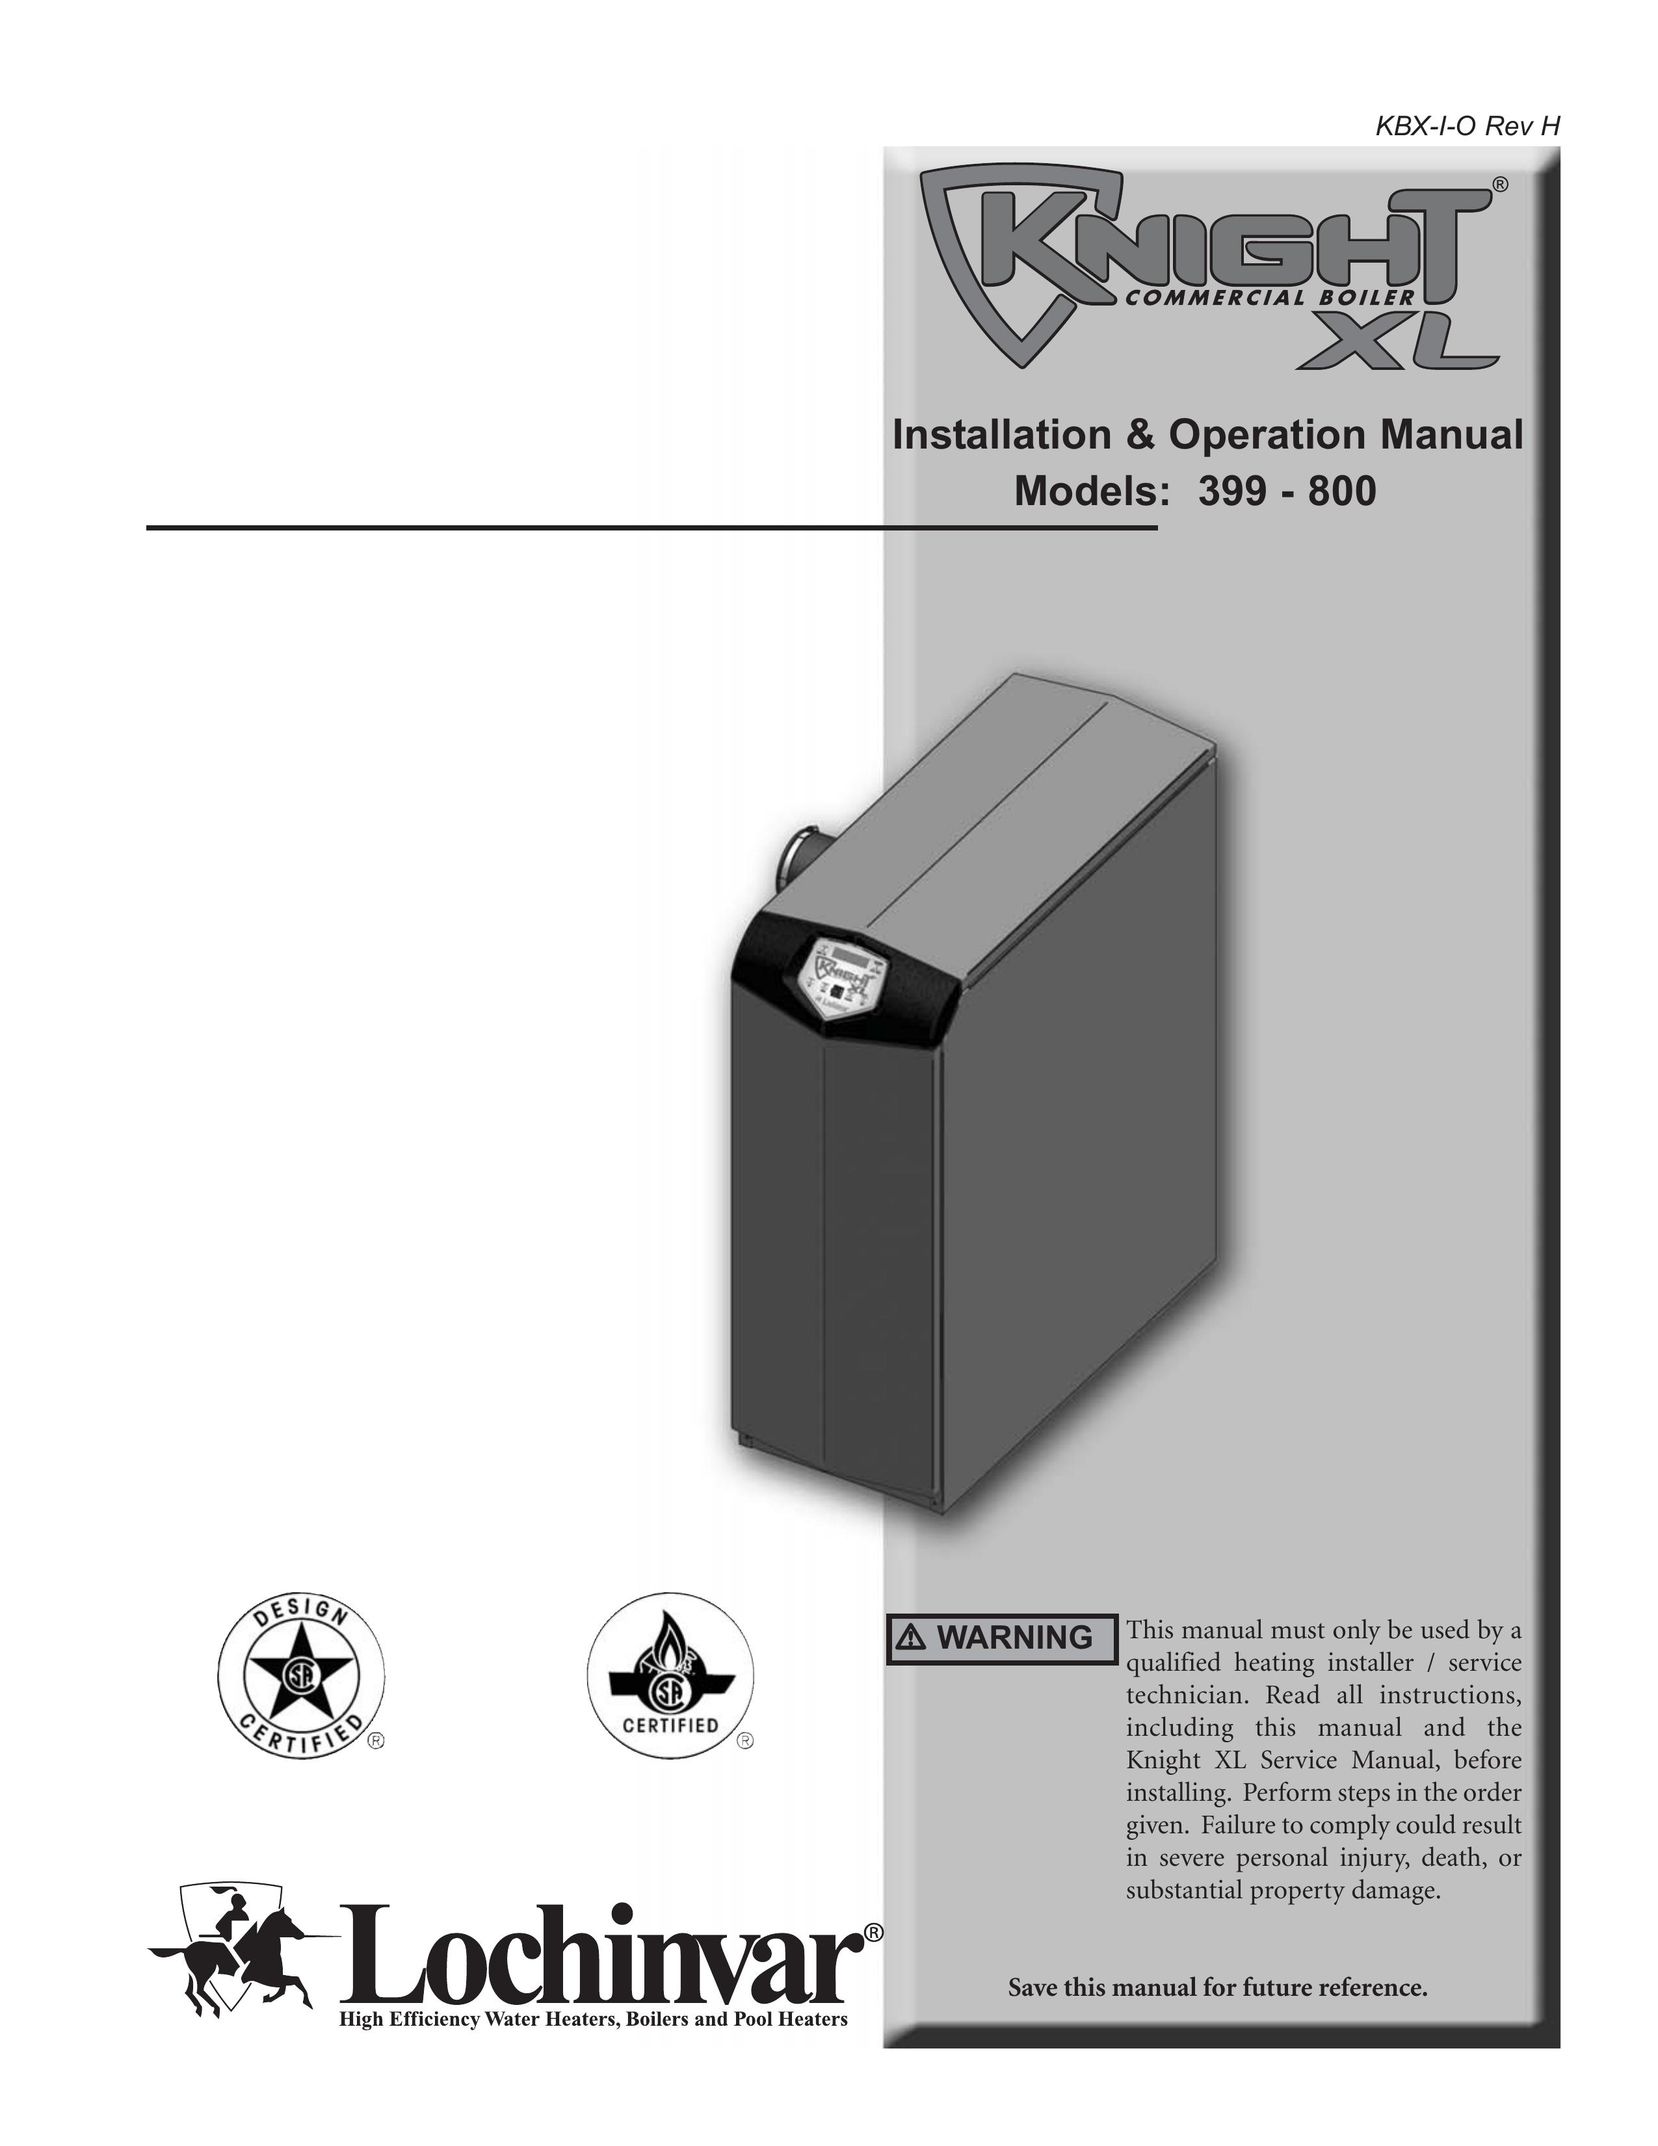 Lochinvar 399 Boiler User Manual